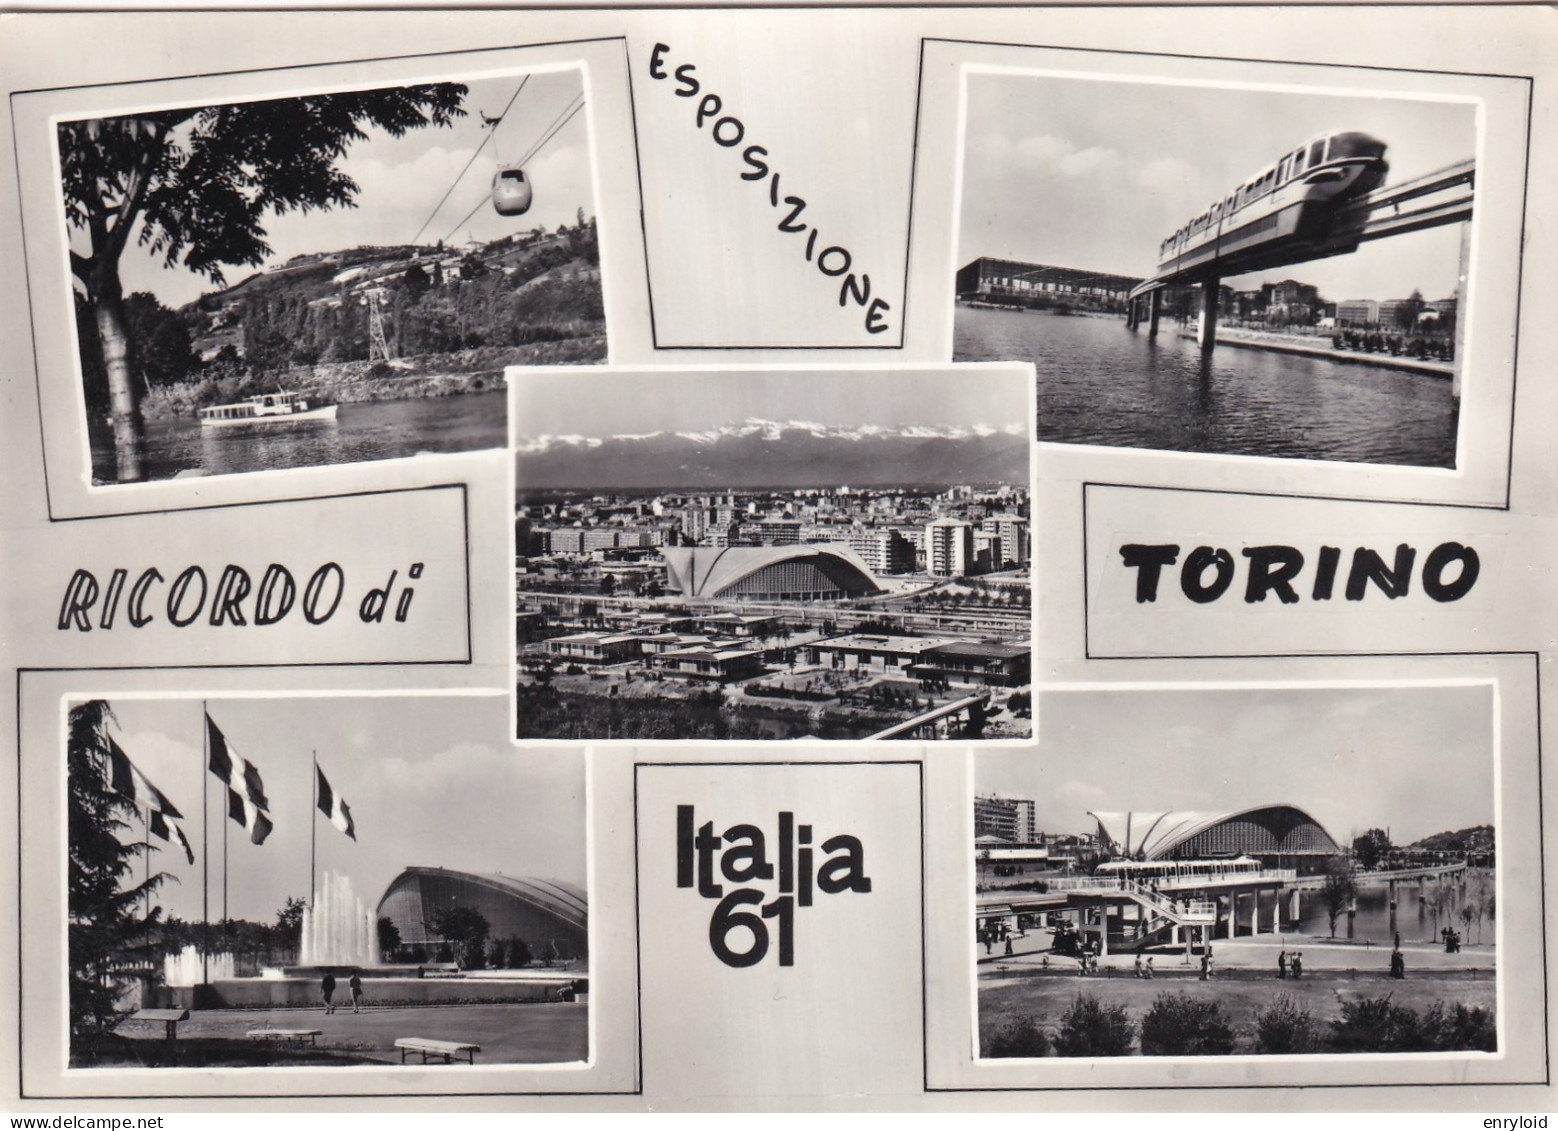 Torino Torino Italia 1961 - Andere Monumente & Gebäude